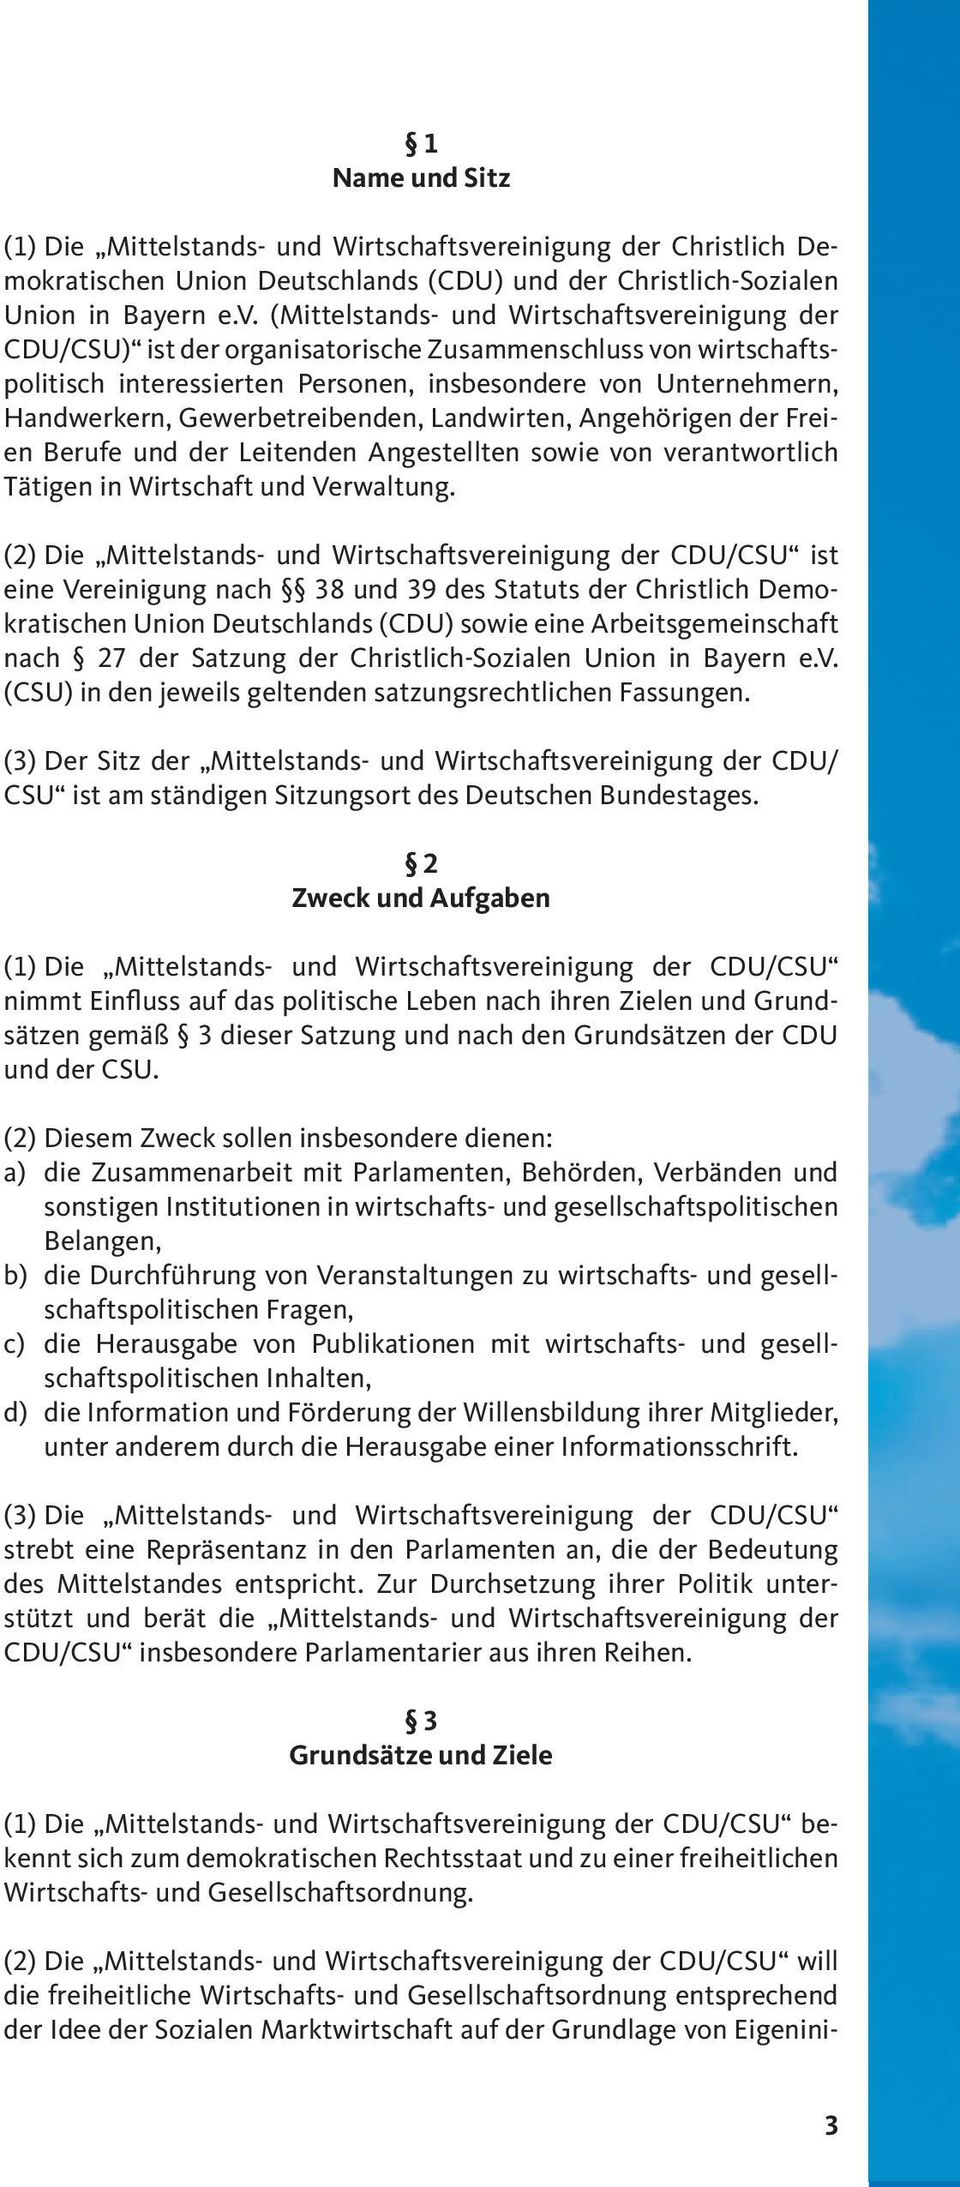 (Mittelstands- und Wirtschaftsvereinigung der CDU/CSU) ist der organisatorische Zusammenschluss von wirtschaftspolitisch interessierten Personen, insbesondere von Unternehmern, Handwerkern,